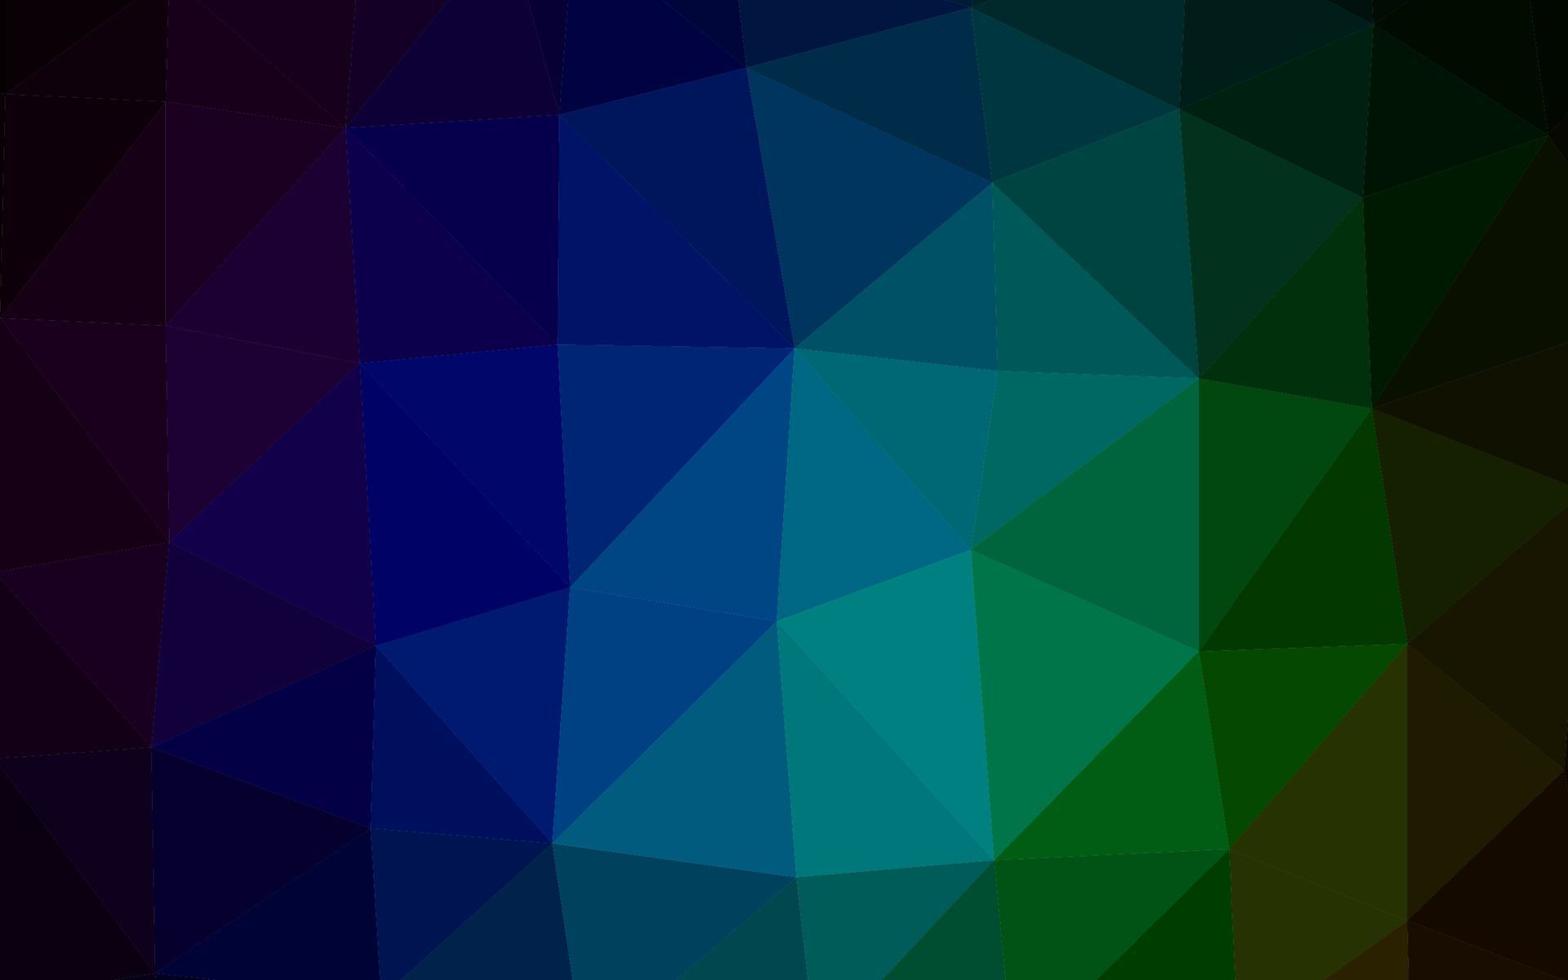 dunkler mehrfarbiger, abstrakter Hintergrund des Regenbogenvektorpolygons. vektor